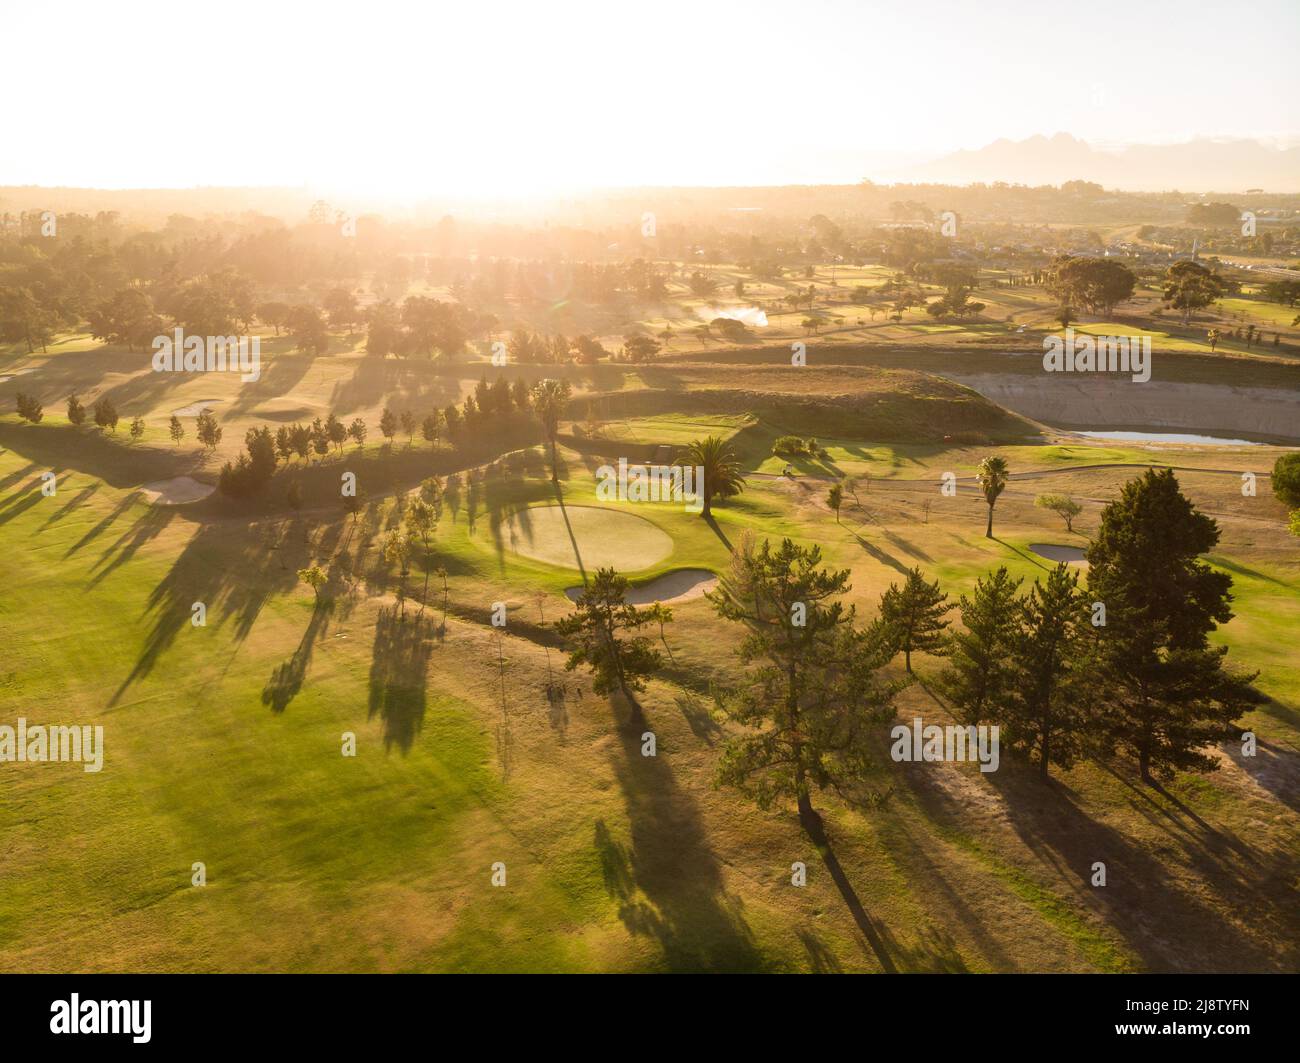 Vue panoramique aérienne sur un paysage luxuriant et soleil éclatant sur un ciel clair pendant le coucher du soleil, espace de copie Banque D'Images